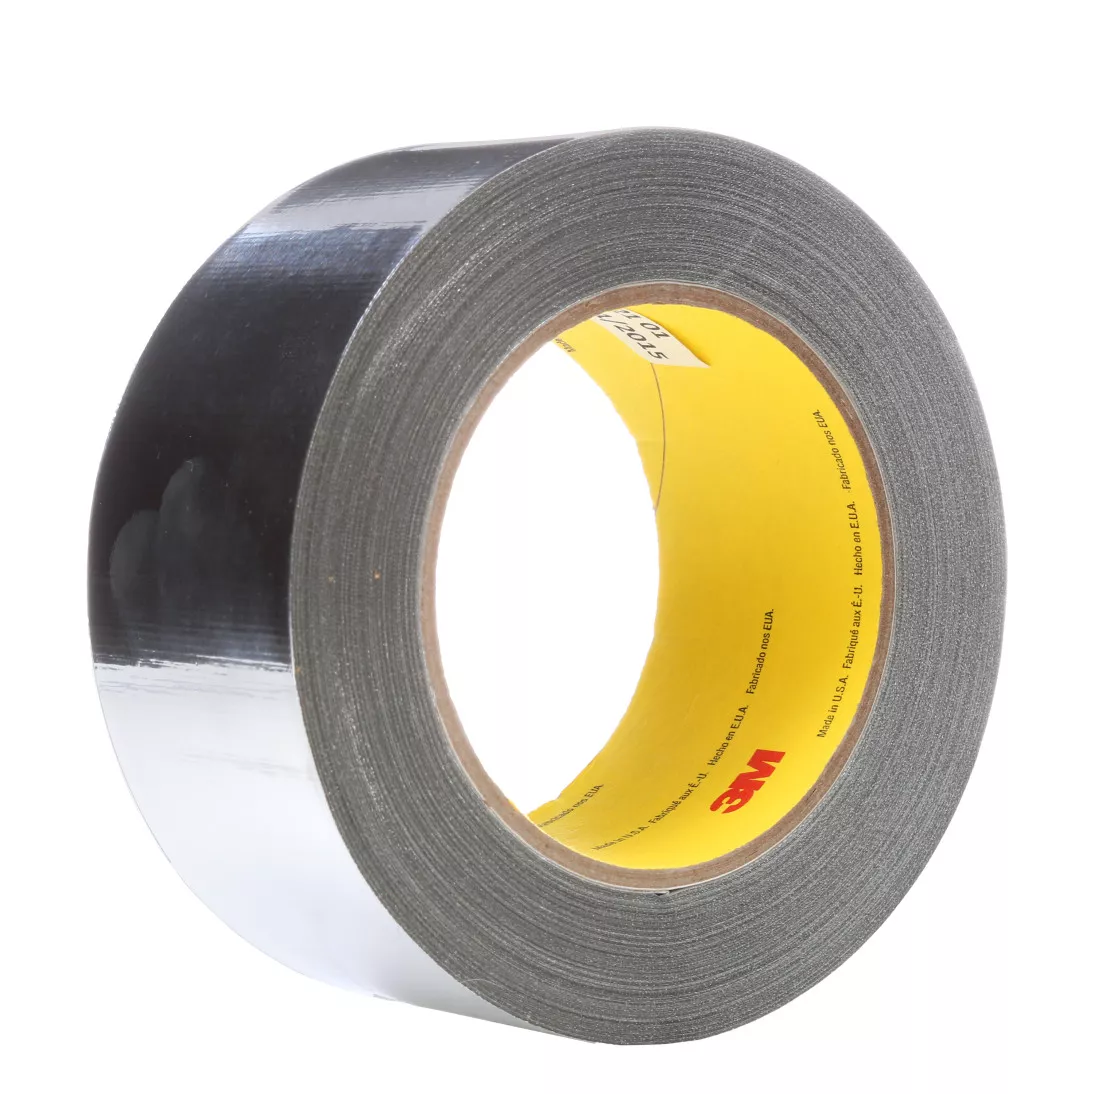 3M™ High Temperature Aluminum Foil Glass Cloth Tape 363, Silver, 2 in x
36 yd, 7.3 mil, 24 rolls per case